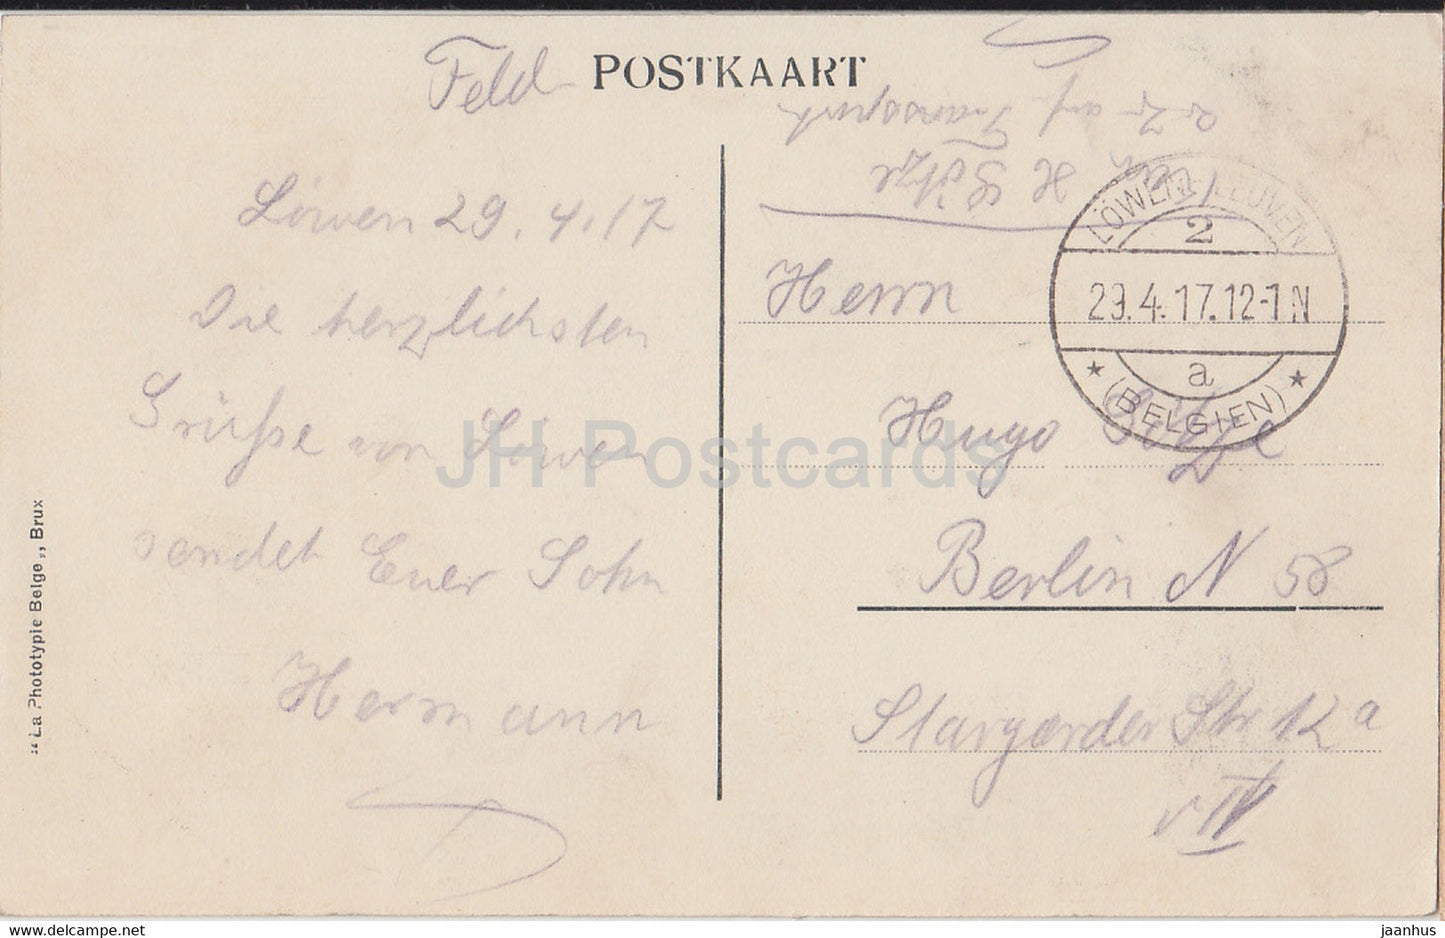 Louvain - Leuven - Panorama - Algemeen Zicht - Feldpost - old postcard - 1917 - Belgium - used